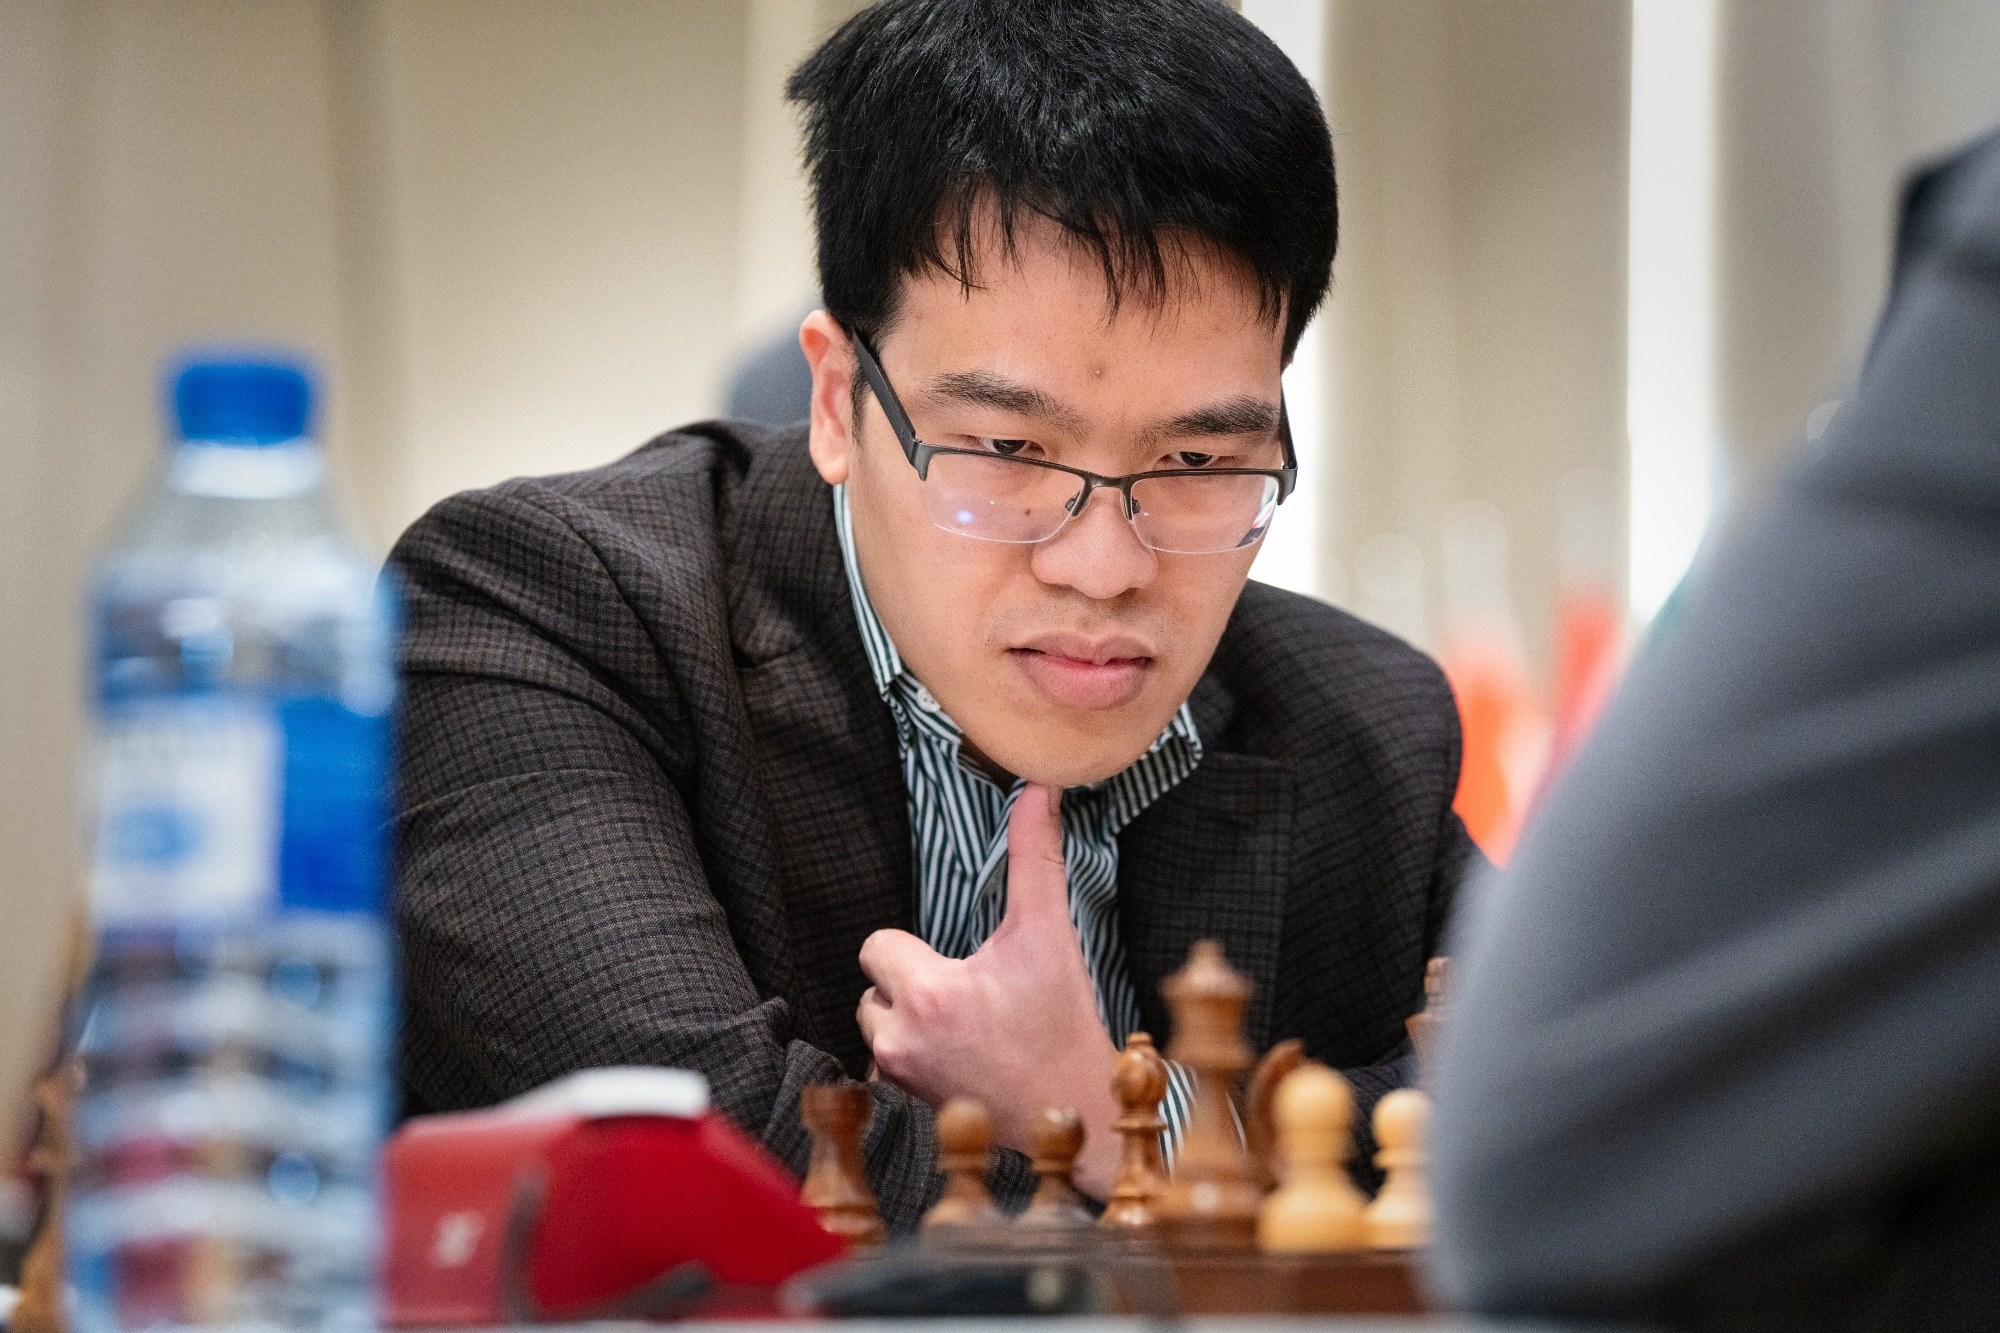 Lê Quang Liêm dừng bước tại World Cup cờ vua 2023